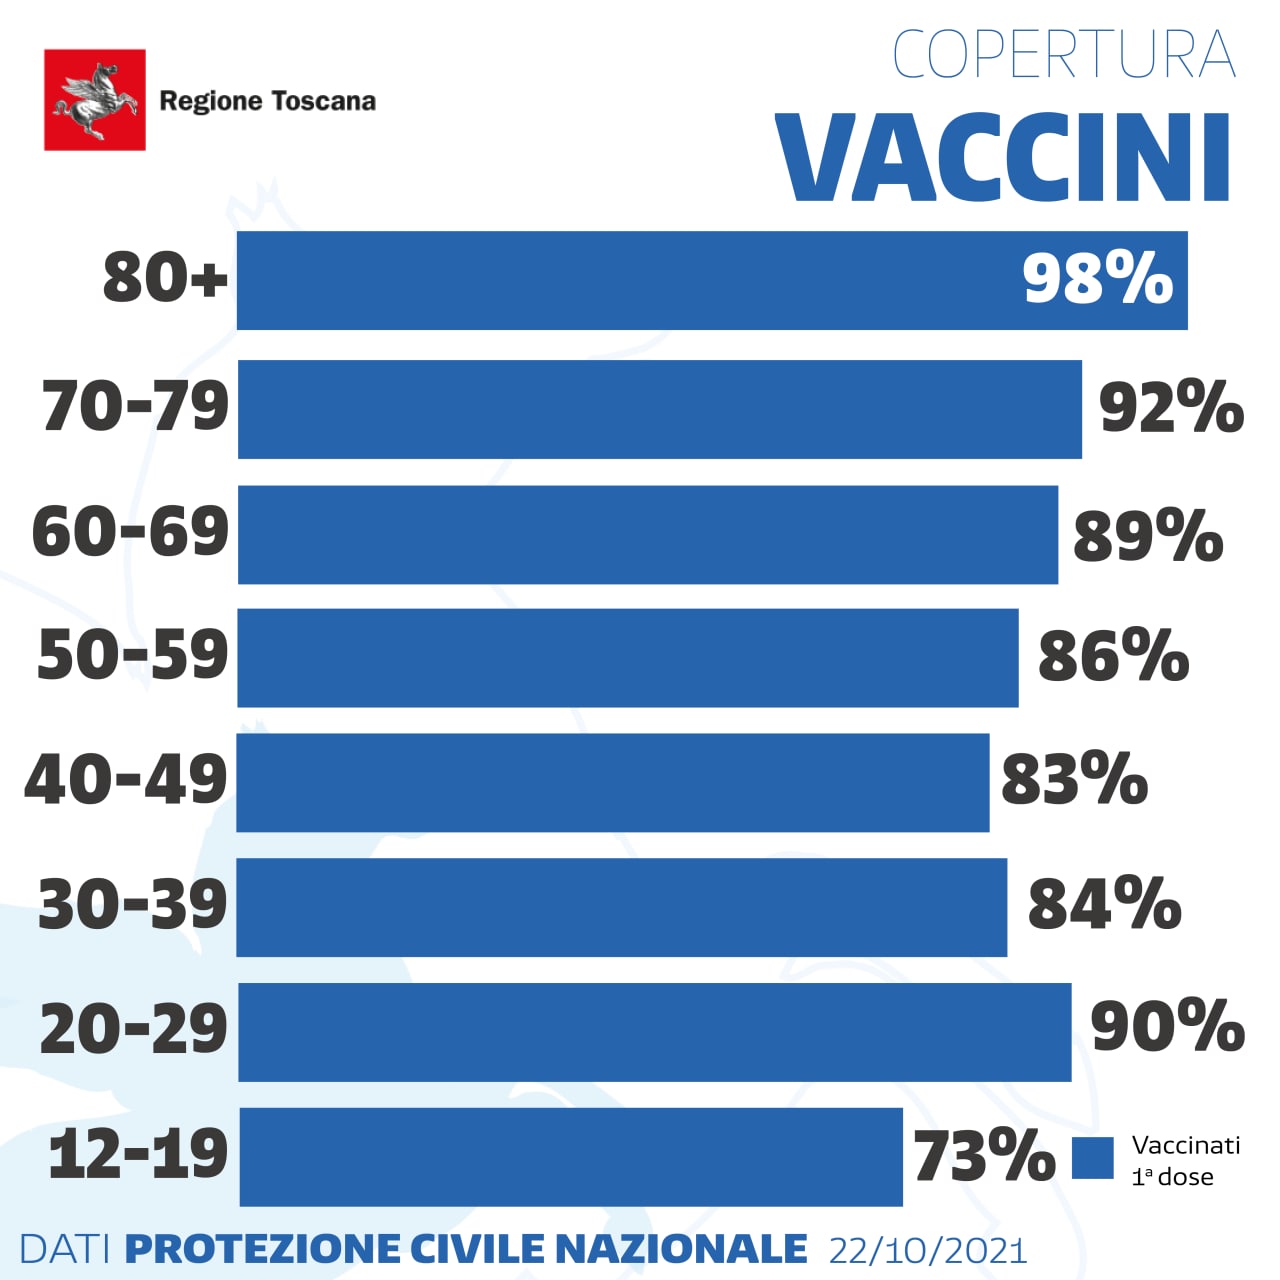 Vaccinati in Toscana per classi d'eta'